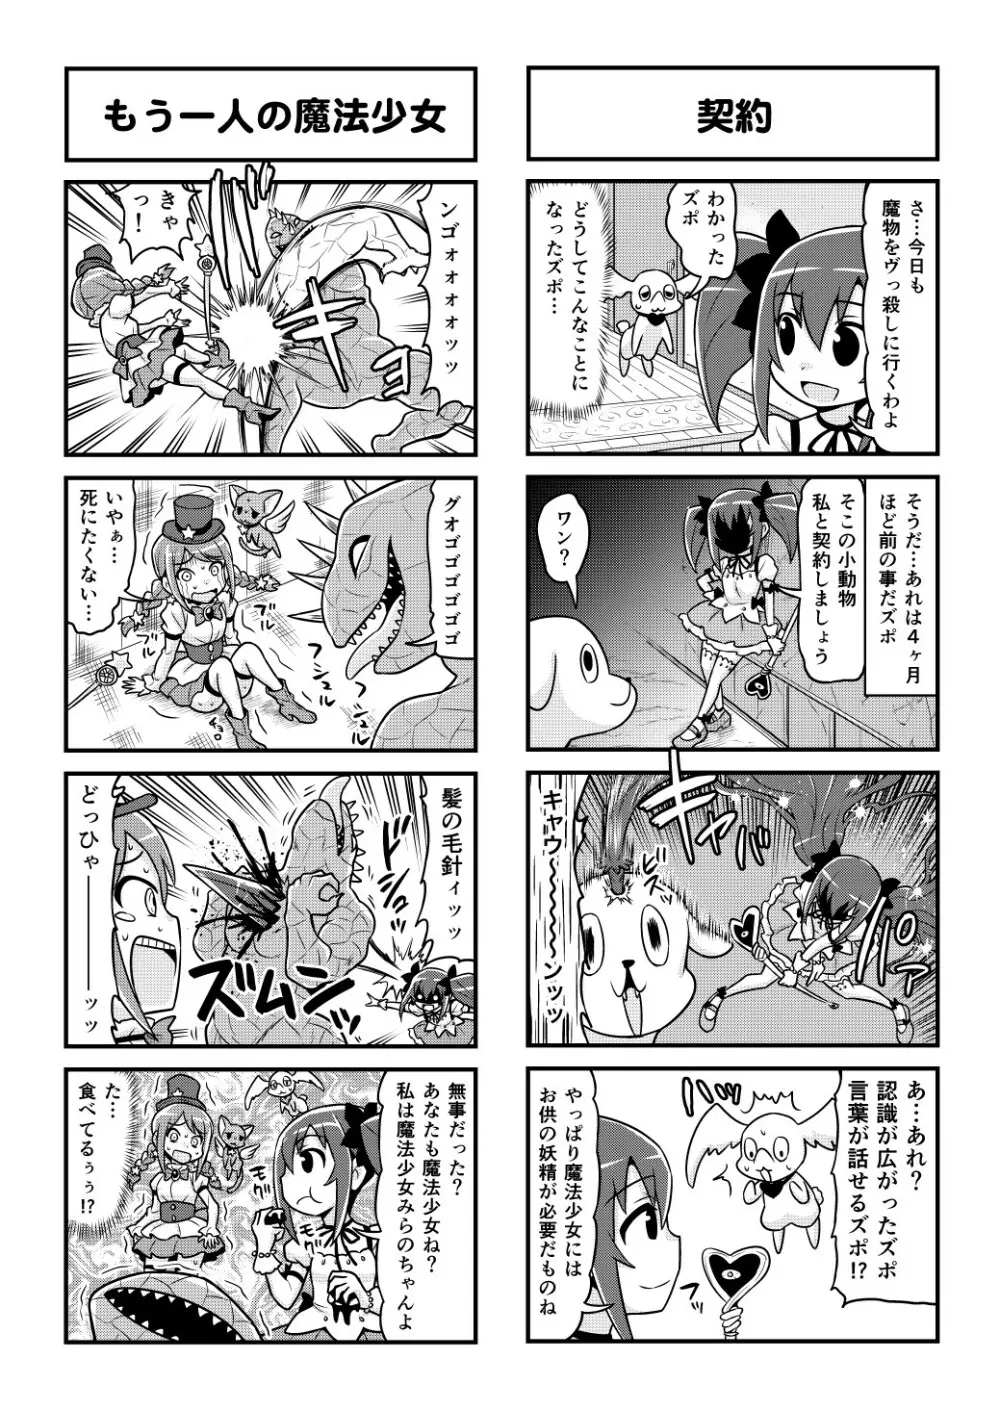 のんきBOY 1-48 - page383